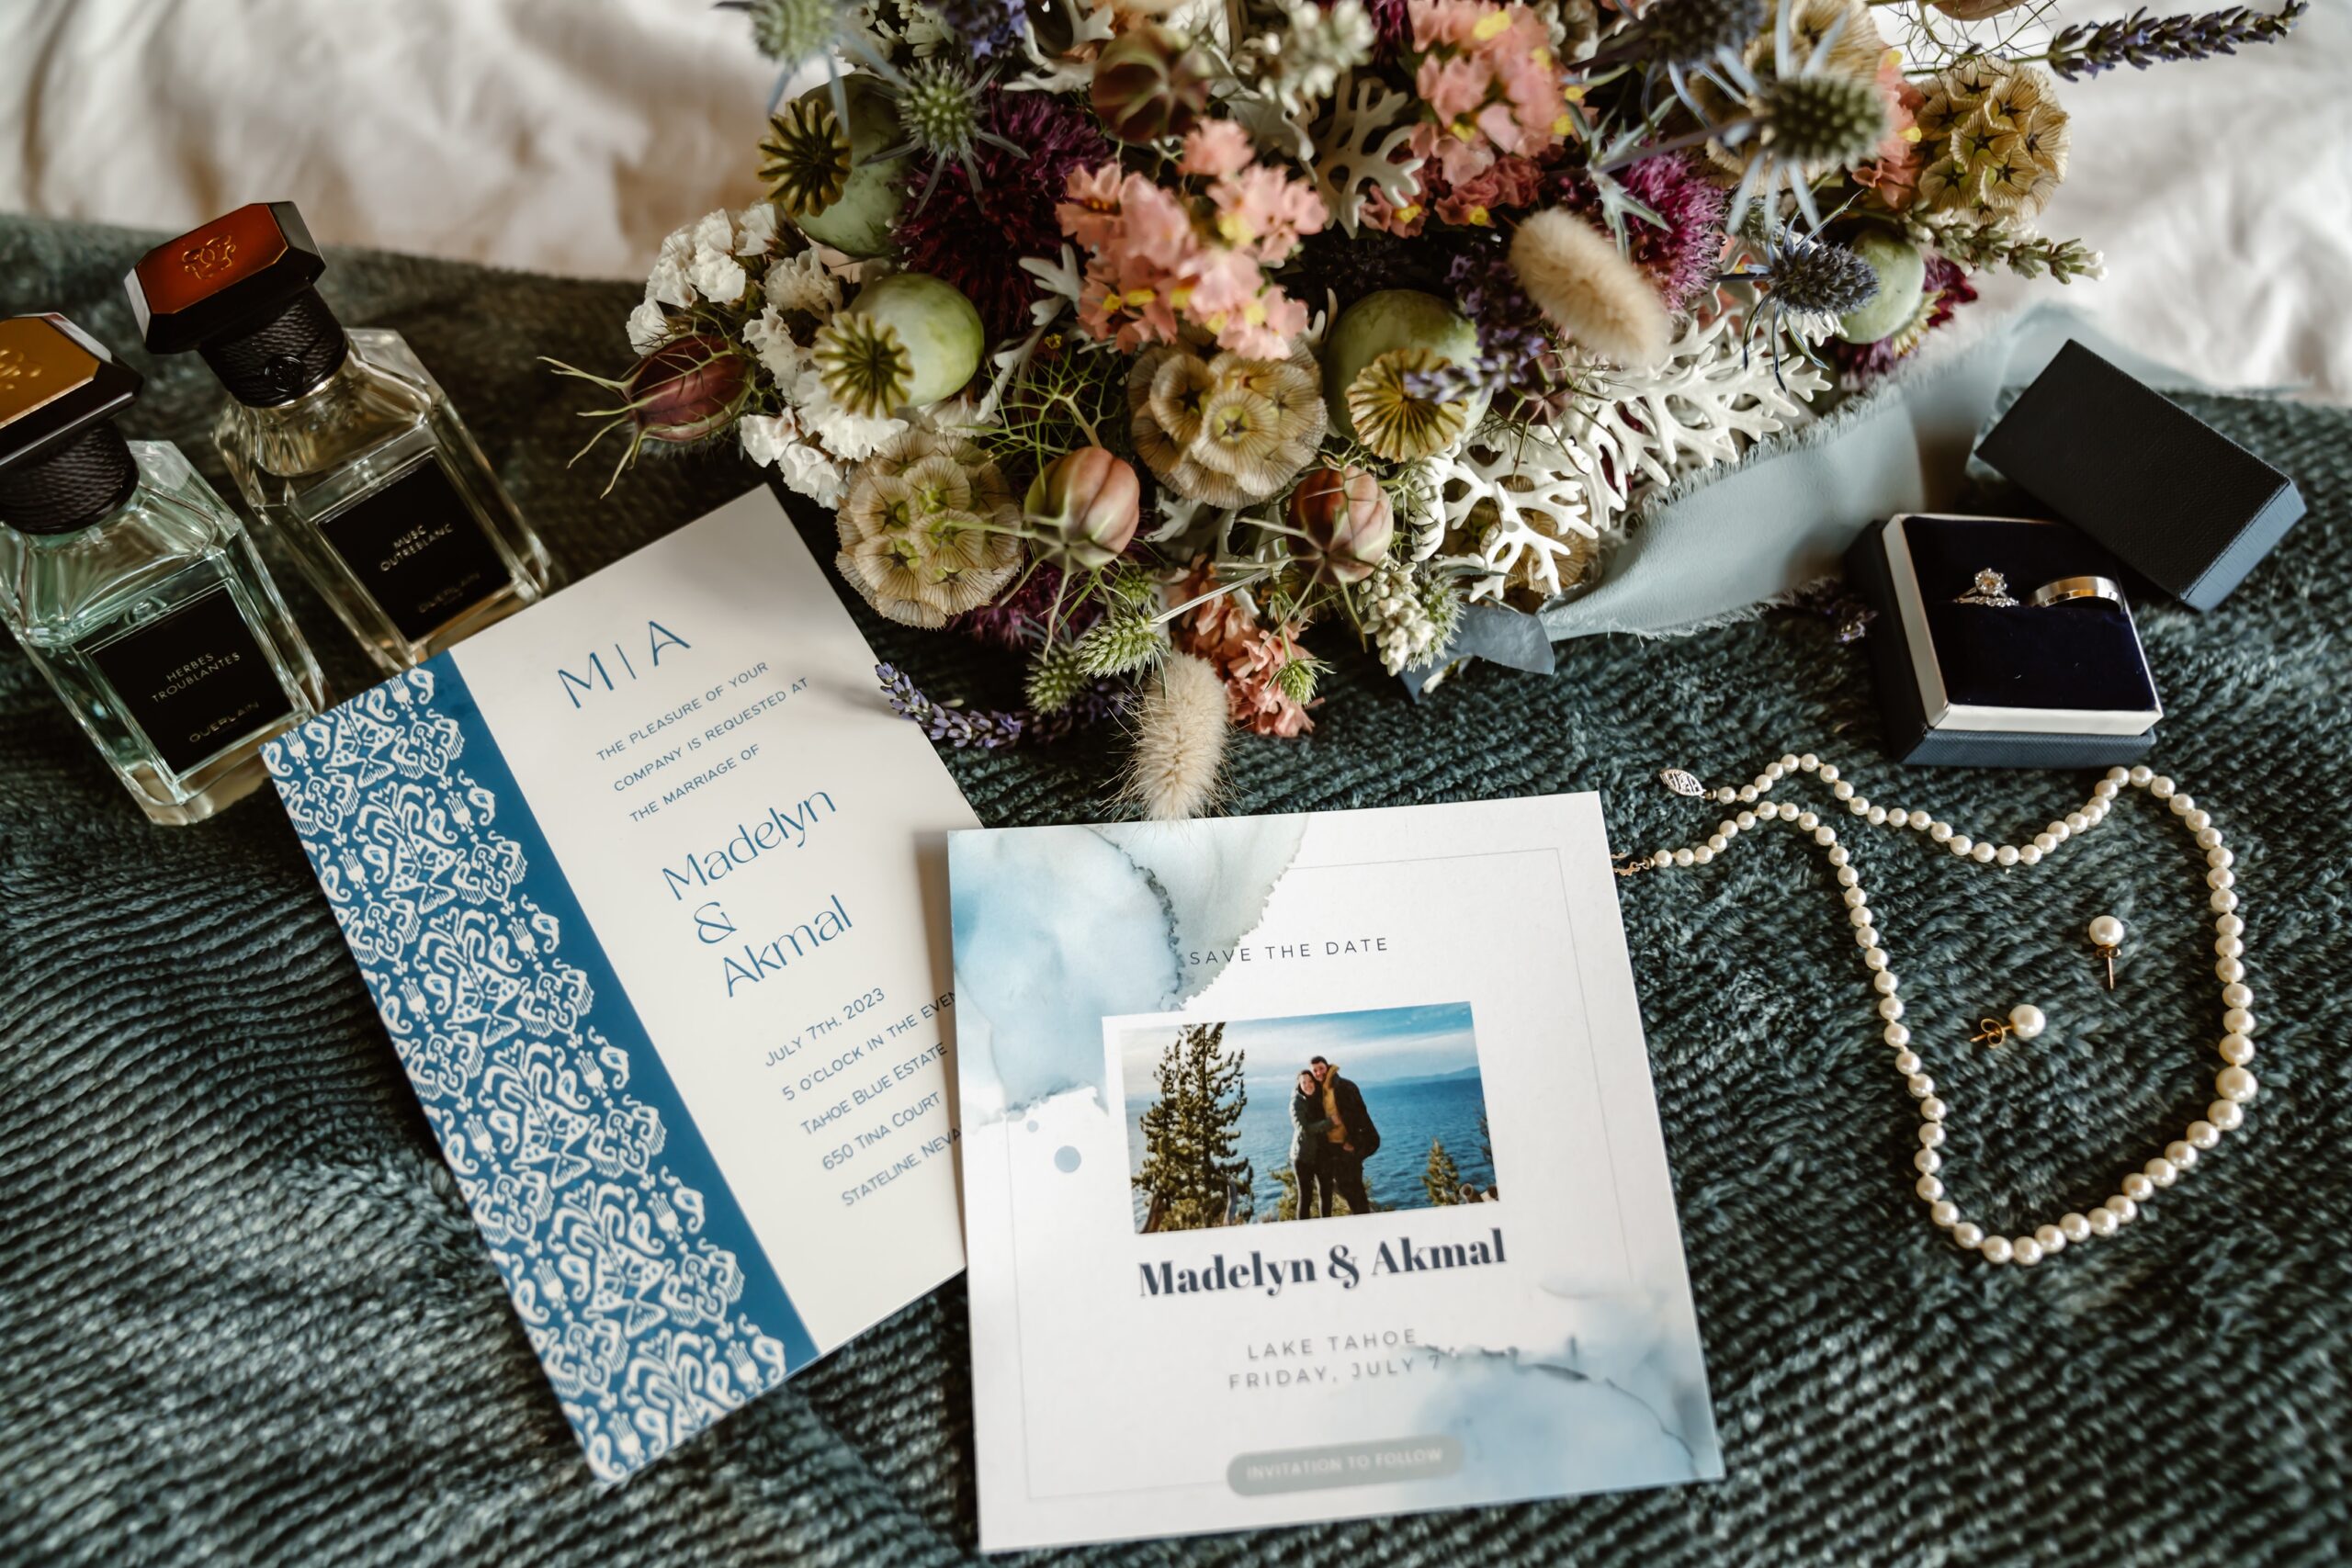 Tahoe Blue Estate wedding invitations